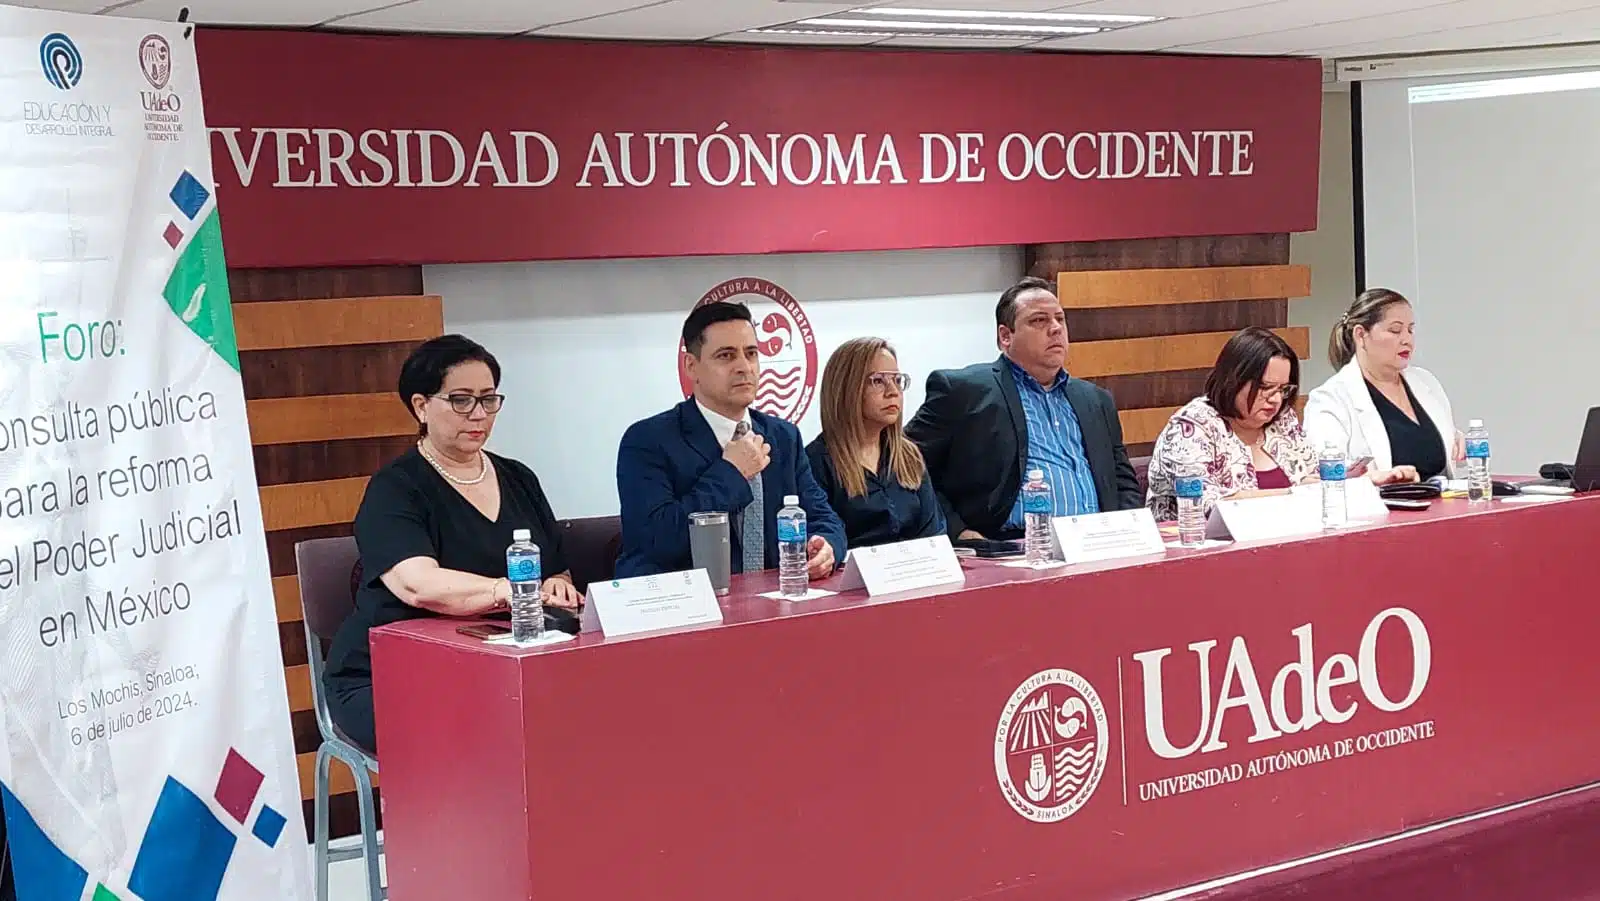 Foro de consulta pública enfocado en la reforma del Poder Judicial en México